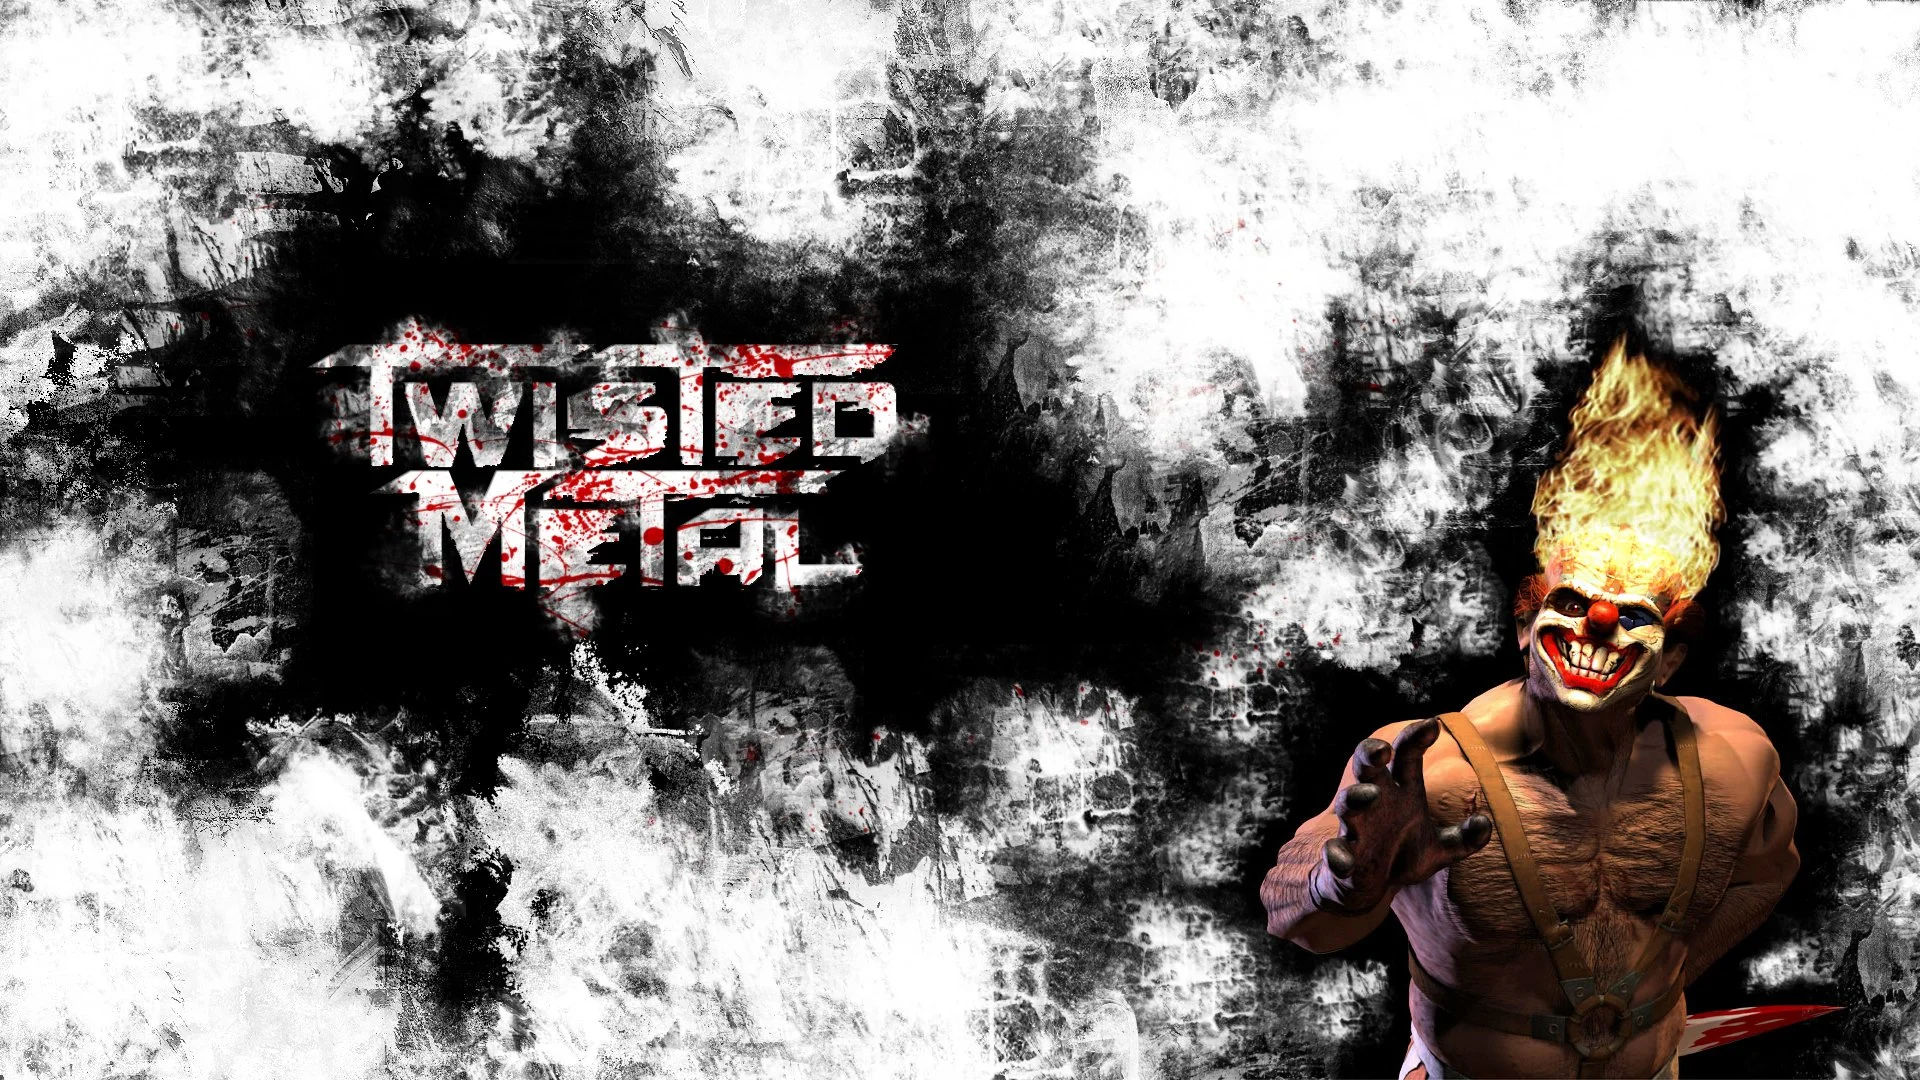 ### Супермодель Криста Спаркс из Twisted Metal, более известная как Доллфейс